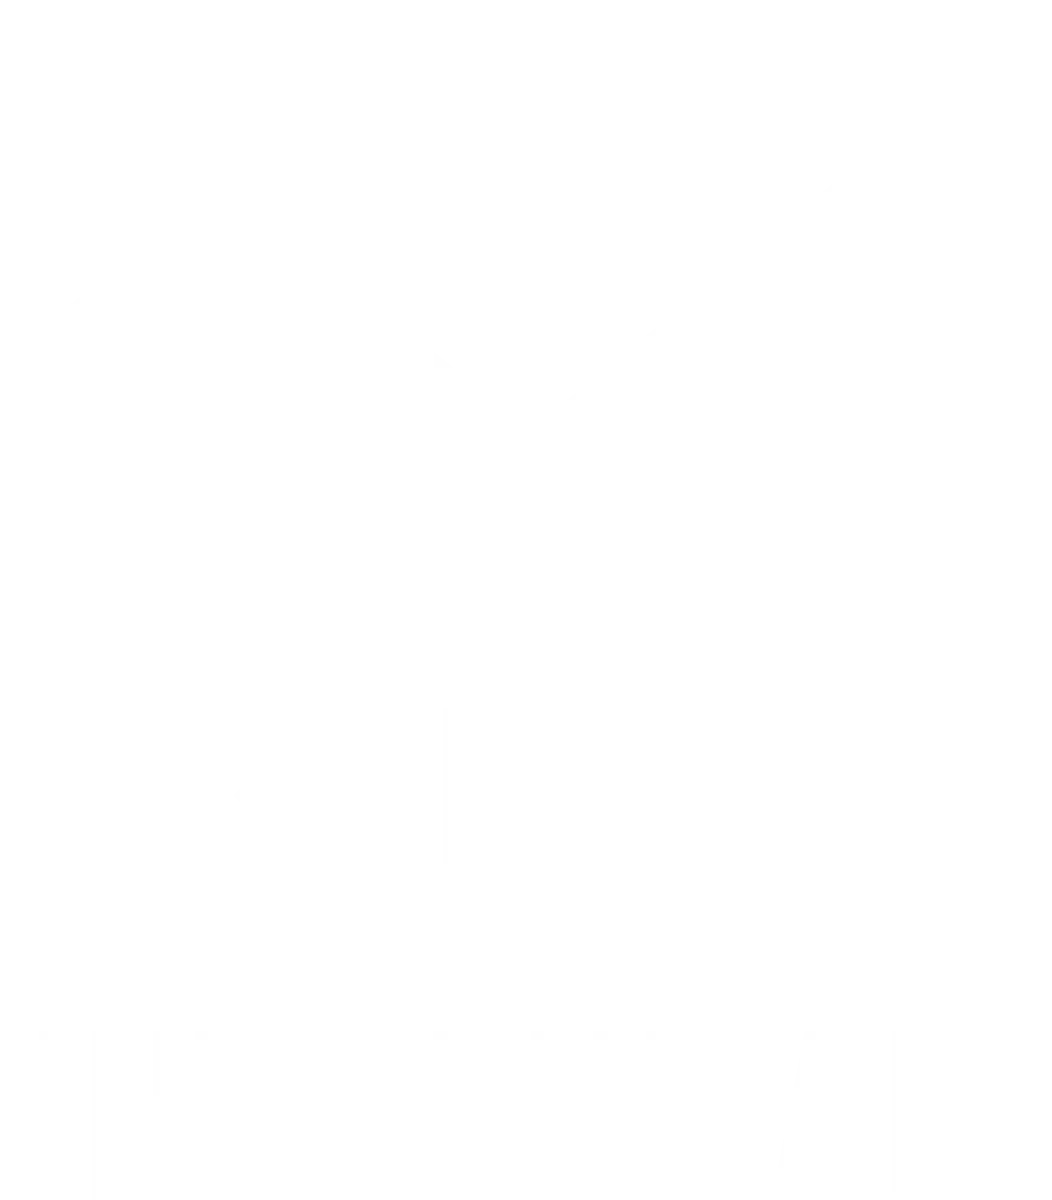 into the am logo